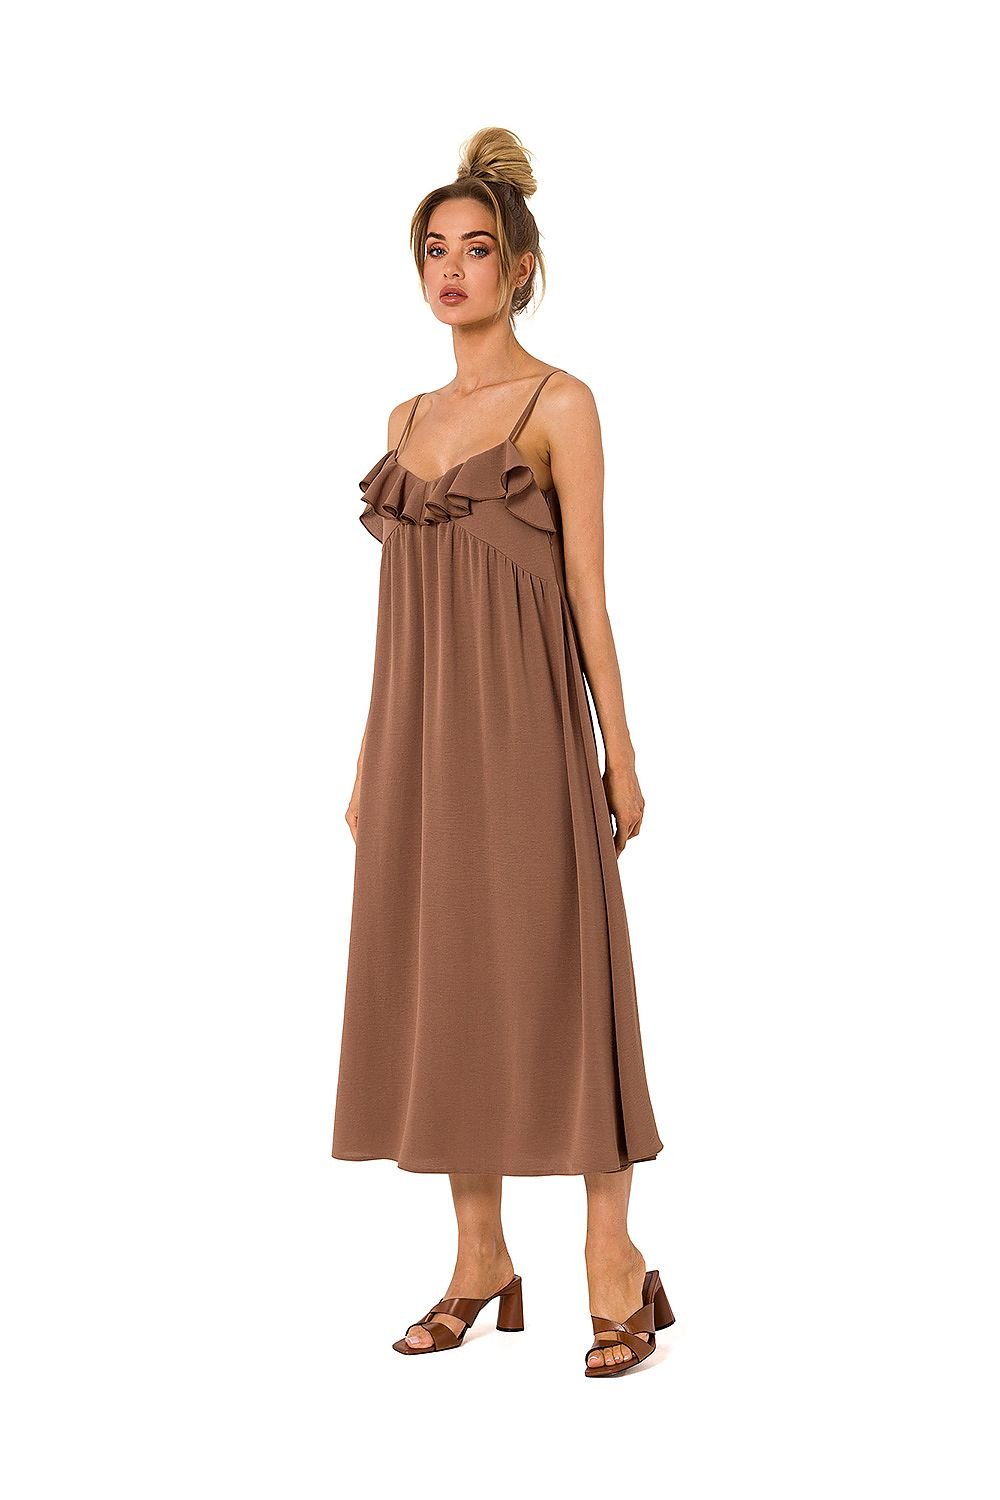 TEEK  Ruffled Top Long Tank Dress DRESS TEEK MH brown L 